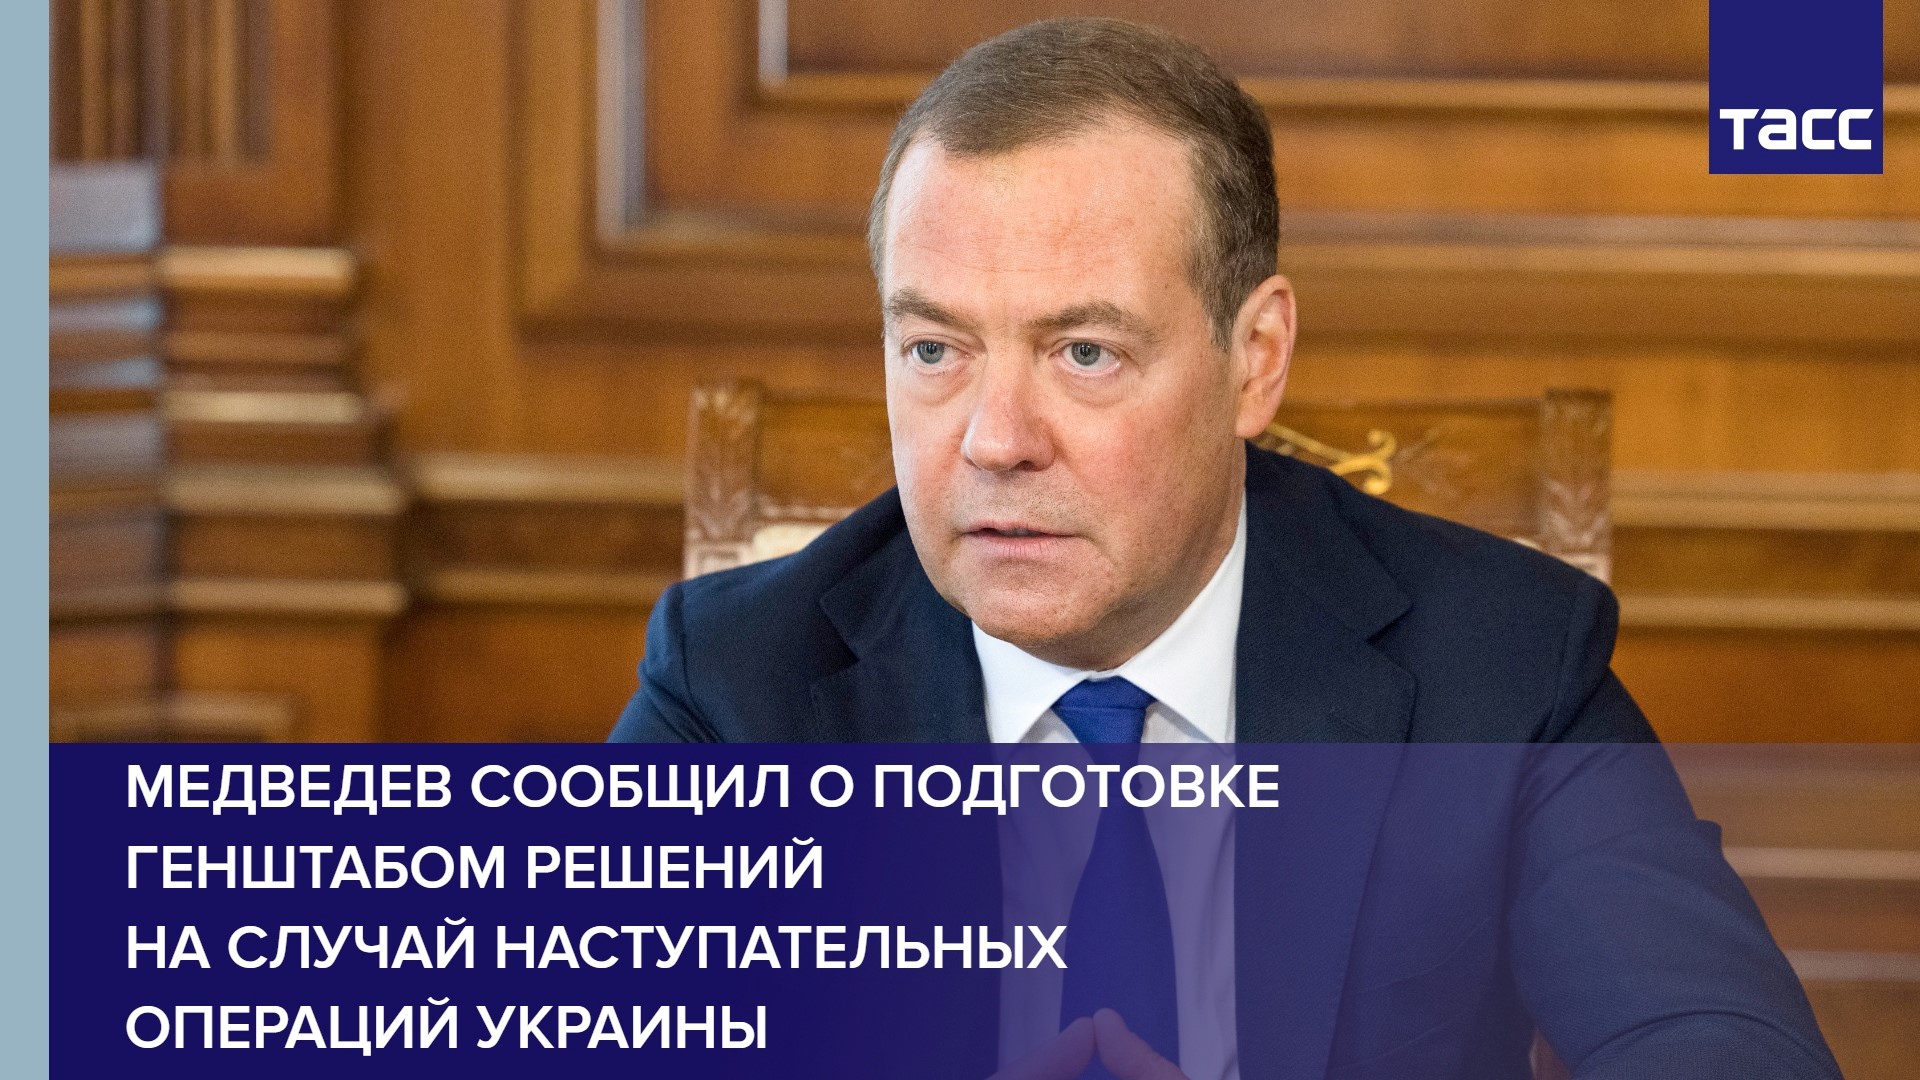 Медведев сообщил о подготовке Генштабом решений на случай наступательных операций Украины